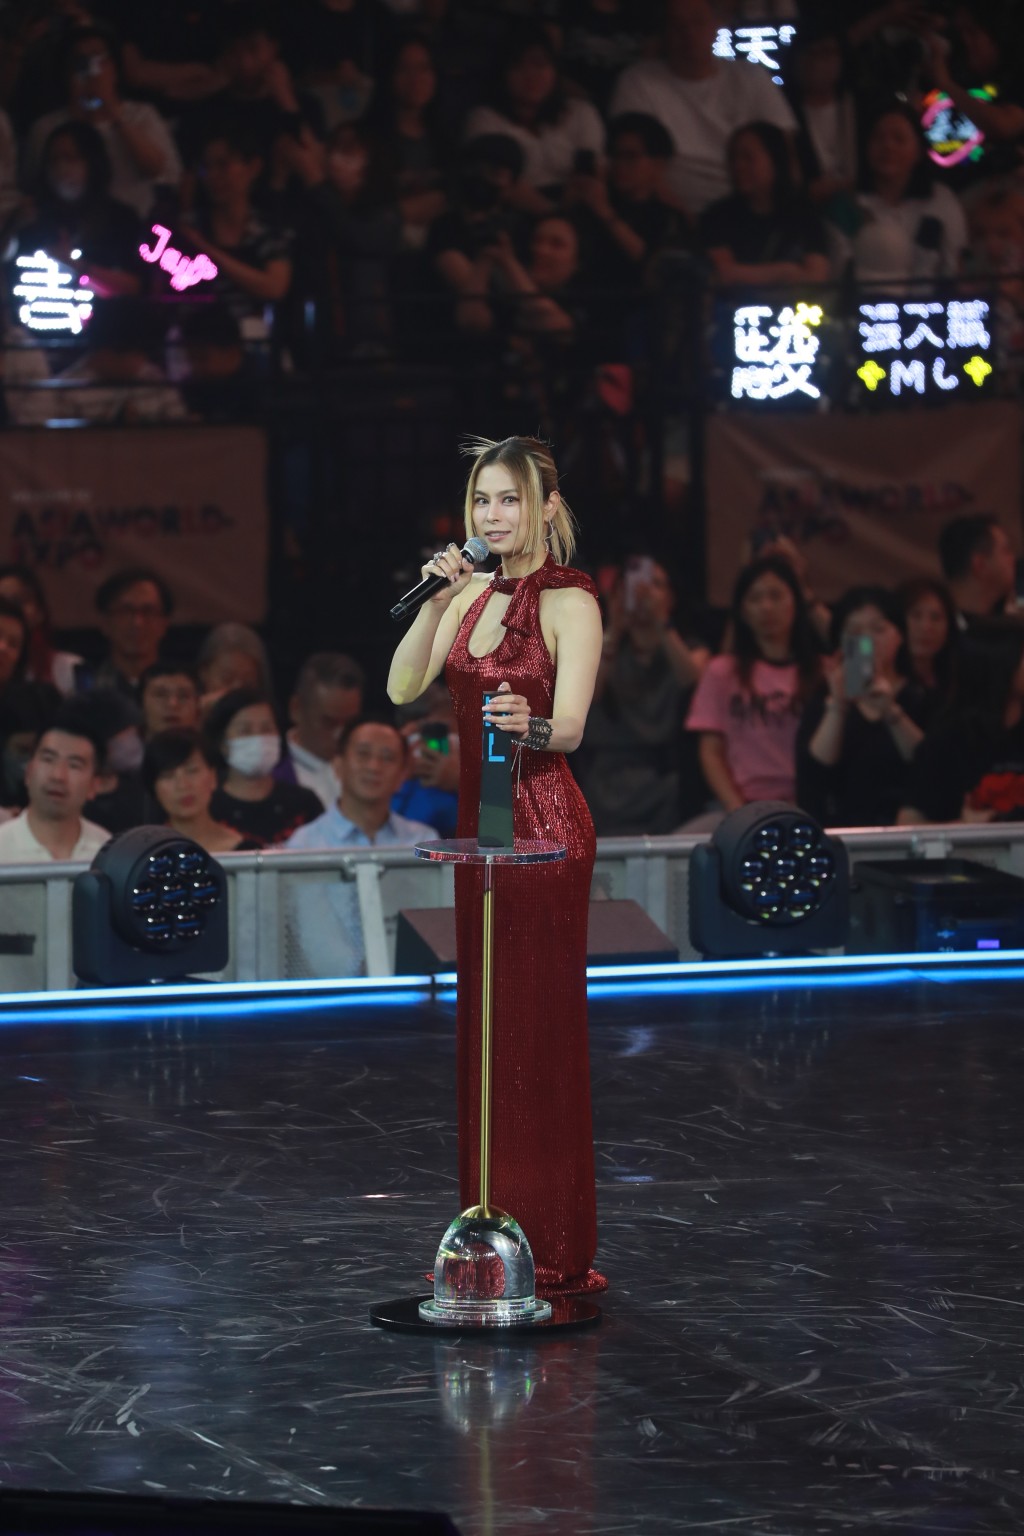 Gin Lee勇夺「评审团表扬奖 节奏蓝调歌曲」及「评审团表扬奖 跳唱歌曲」两个歌曲奖项。